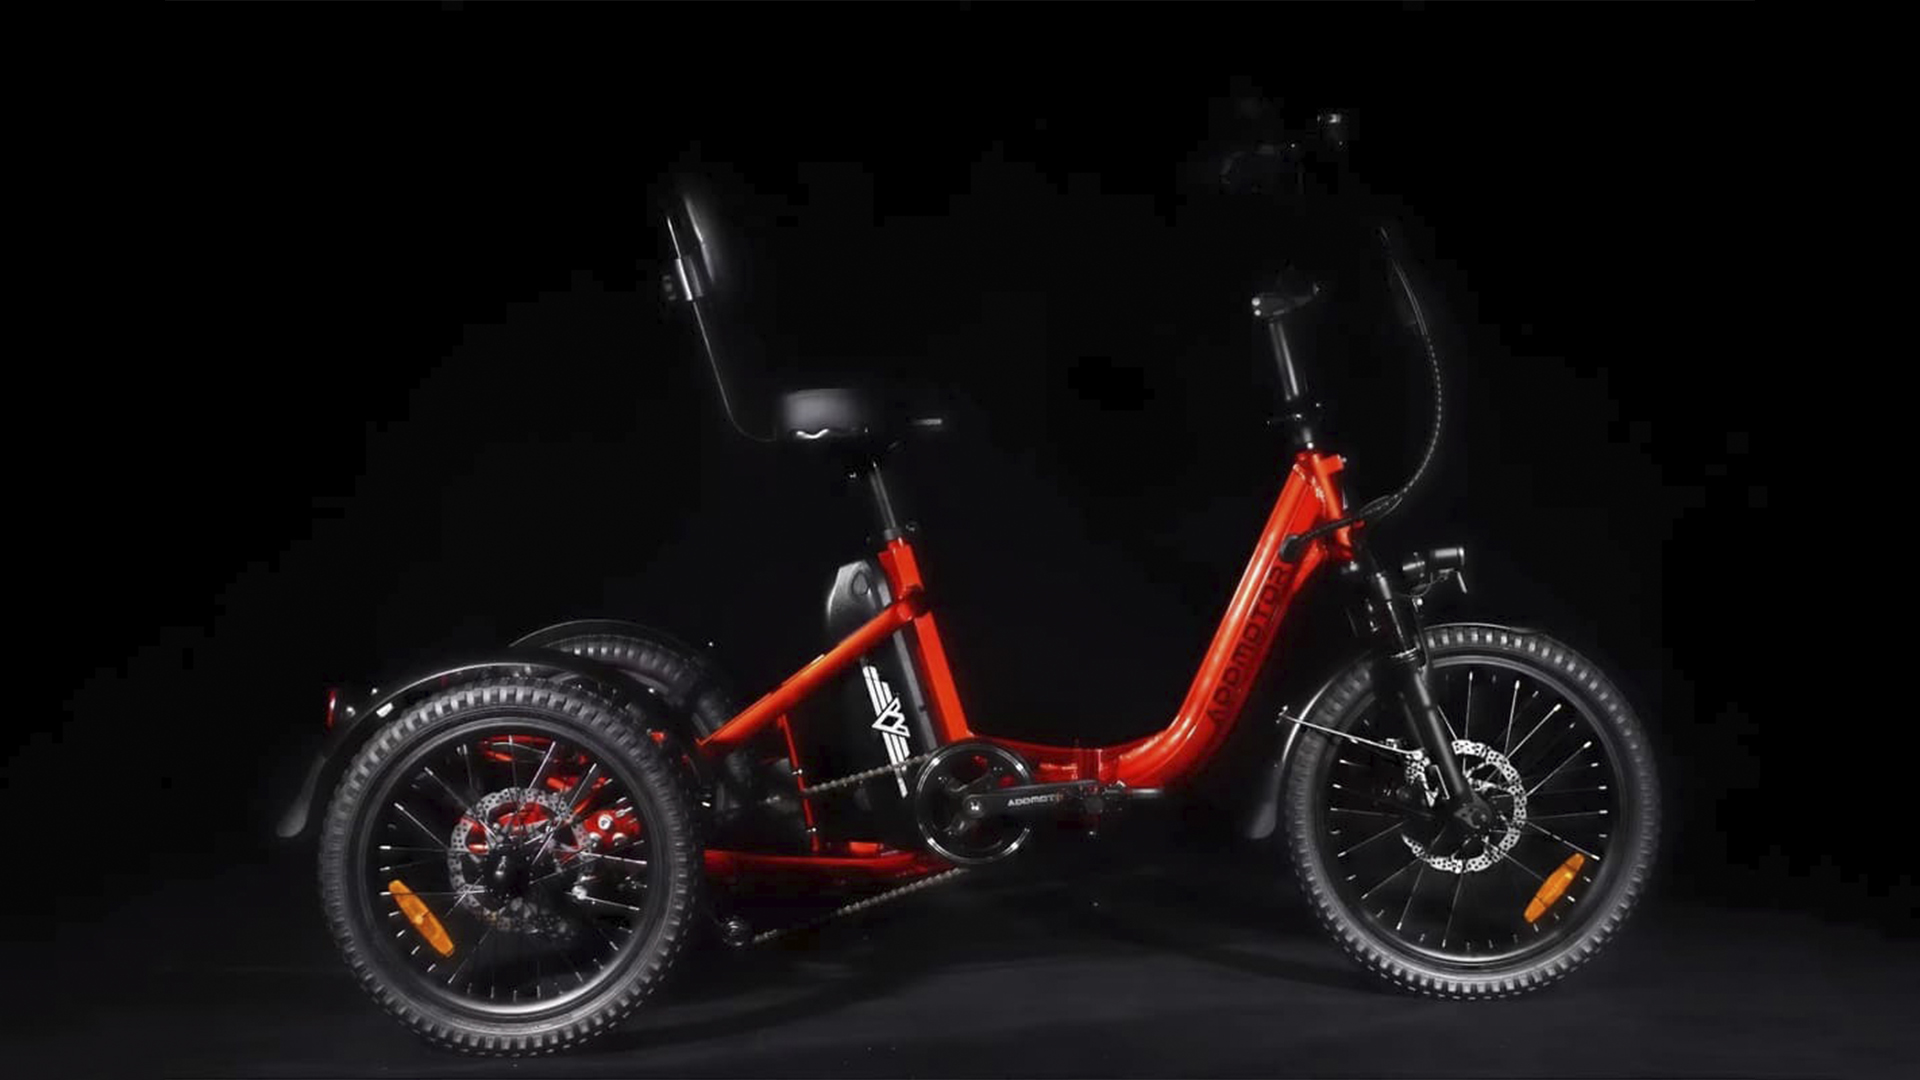 Conheça o CityTri E-310, um triciclo elétrico de alto desempenho a um preço competitivo no mercado